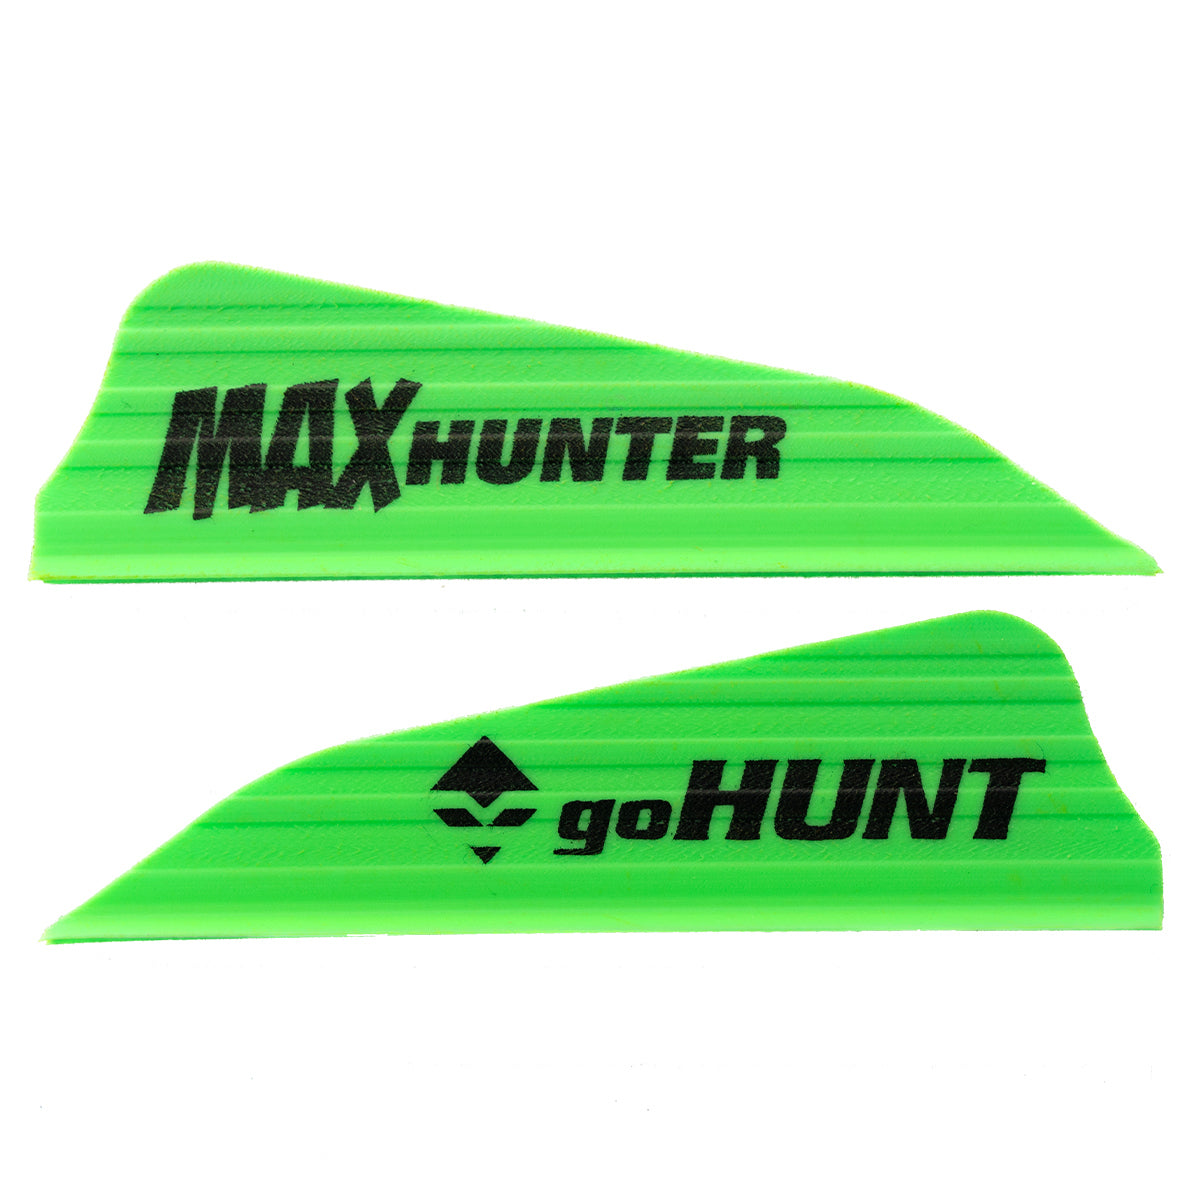 AAE Custom GOHUNT Max Hunter Vanes - 50 Pack in  by GOHUNT | AAE - GOHUNT Shop